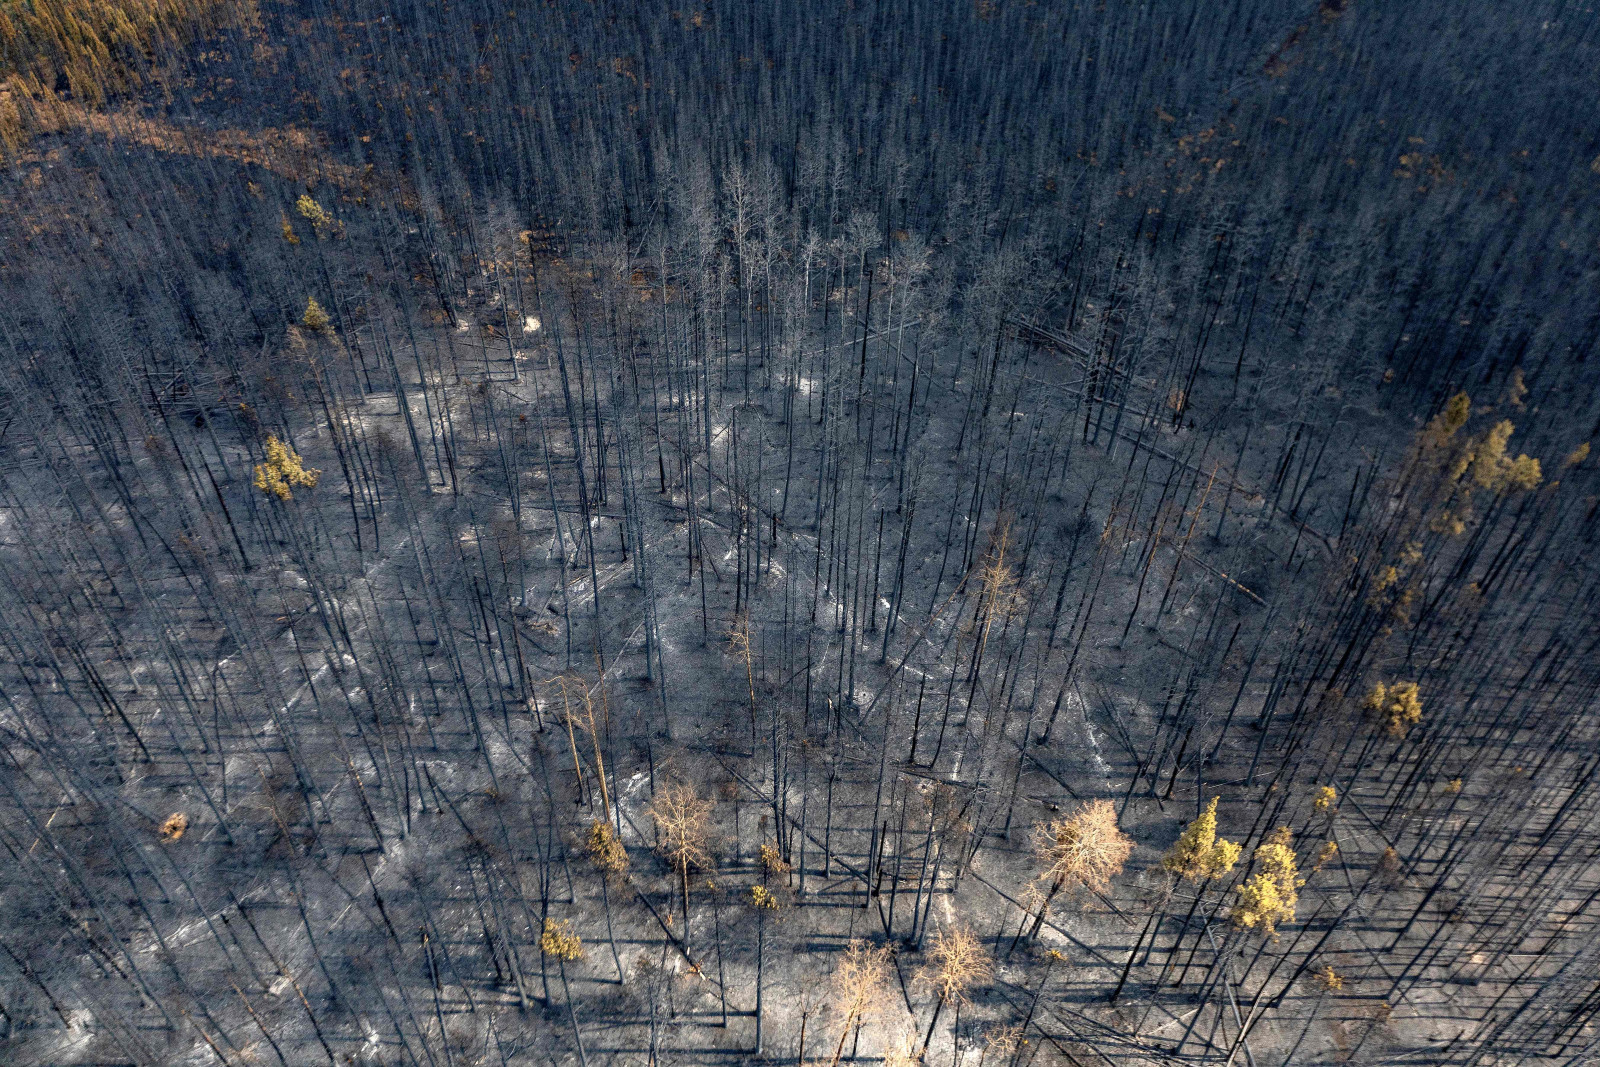 Photo of dead trees in an ashen landscape